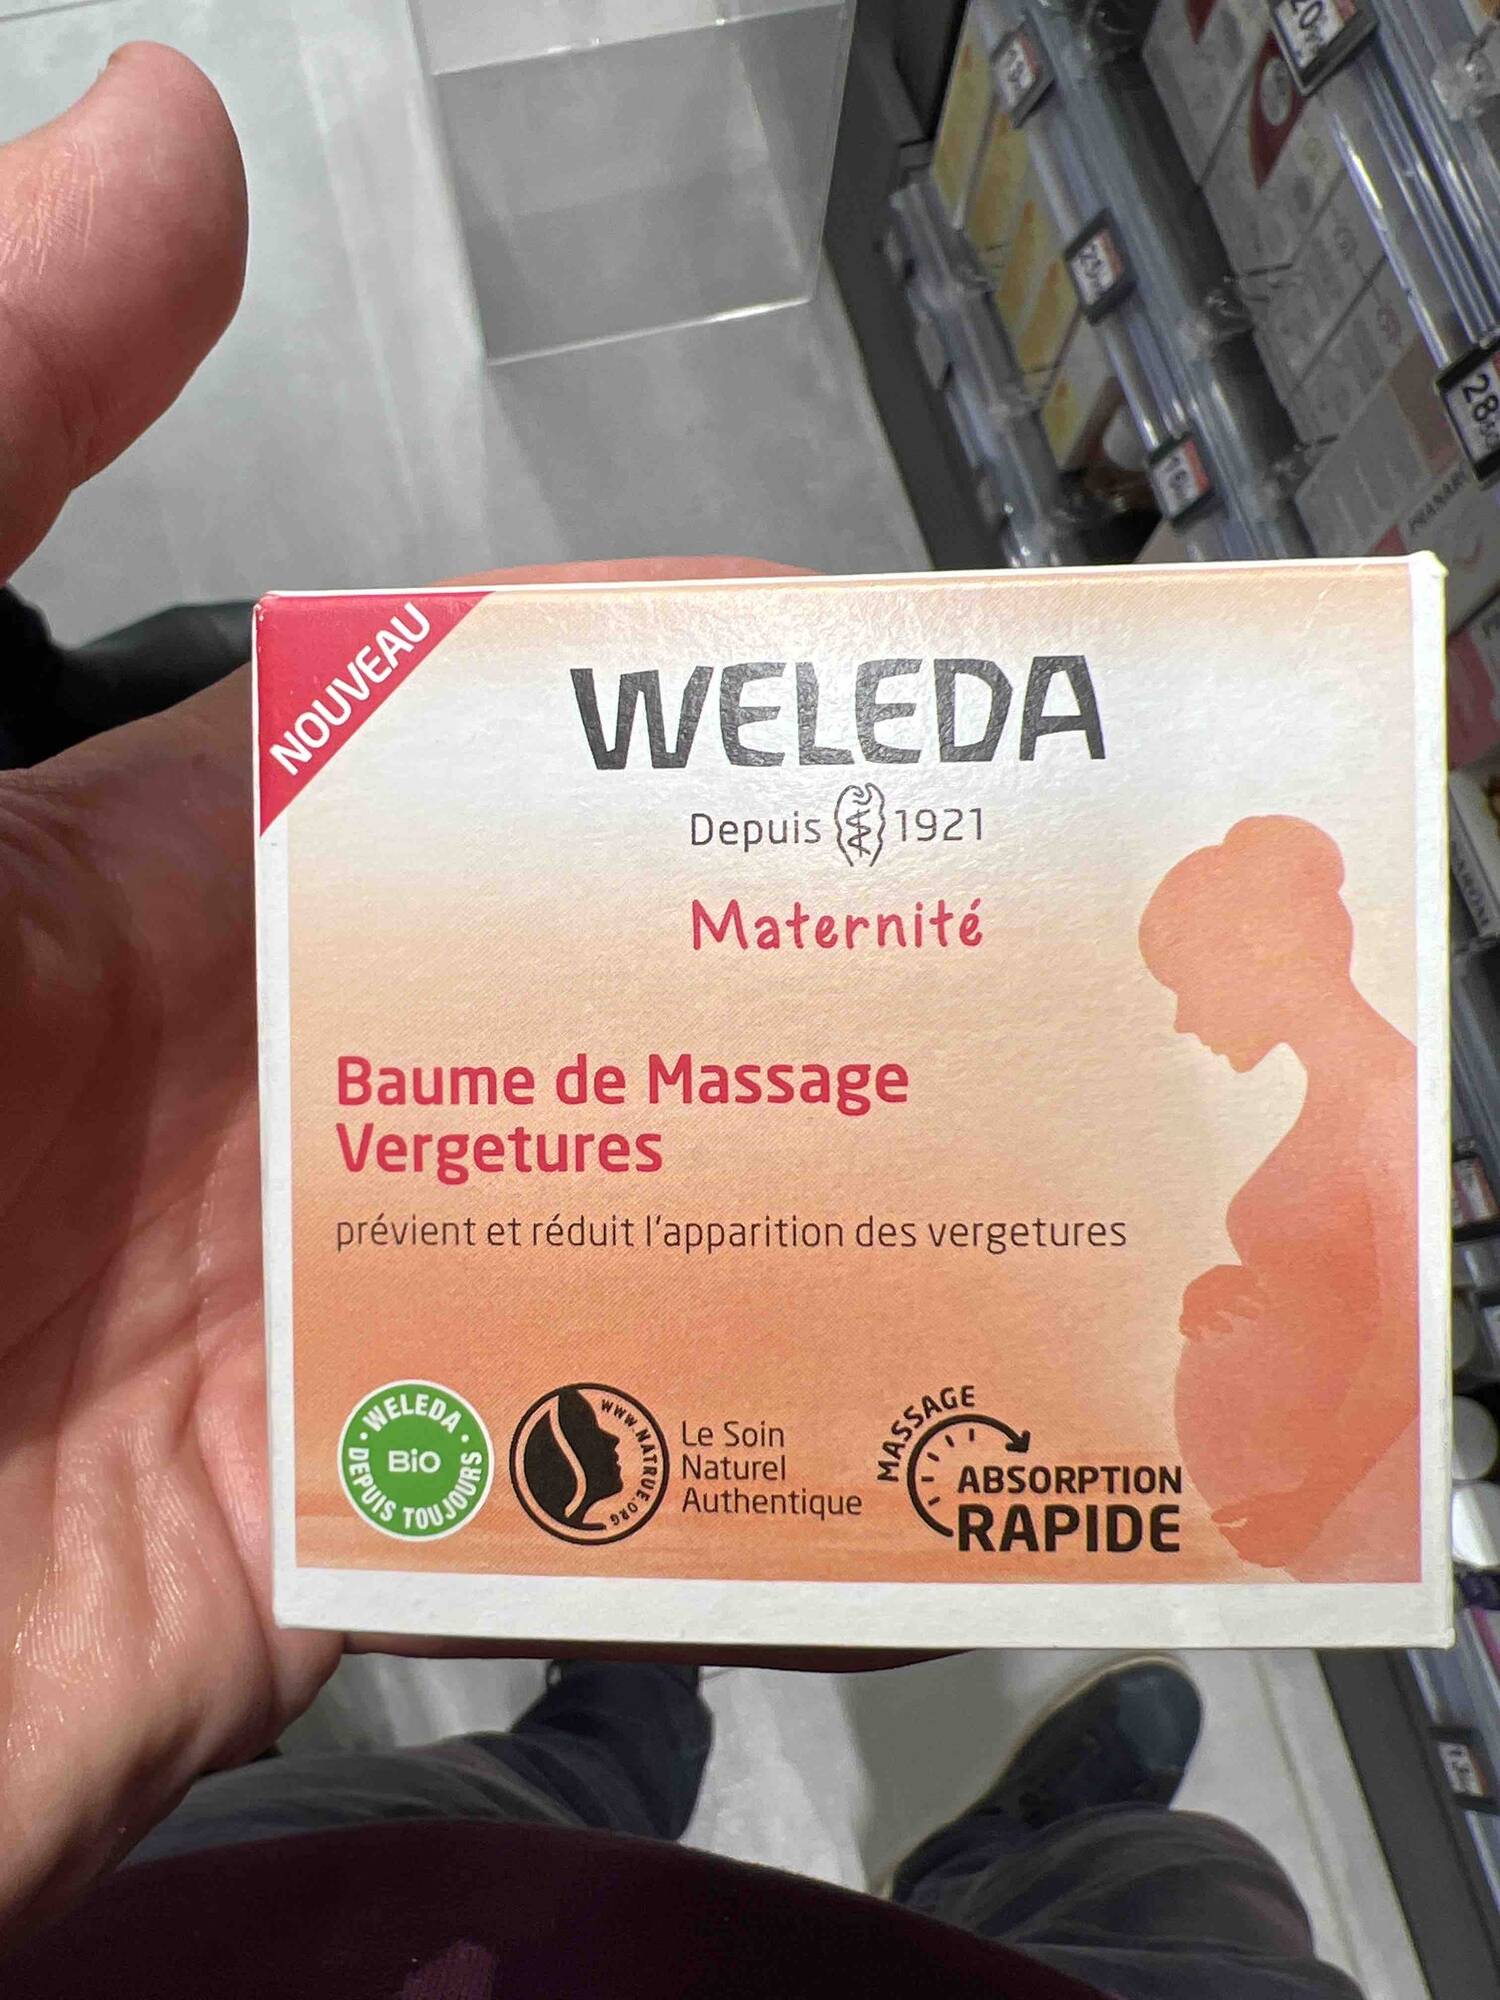 Composition WELEDA Maternité - Baume de massage vergetures - UFC-Que Choisir